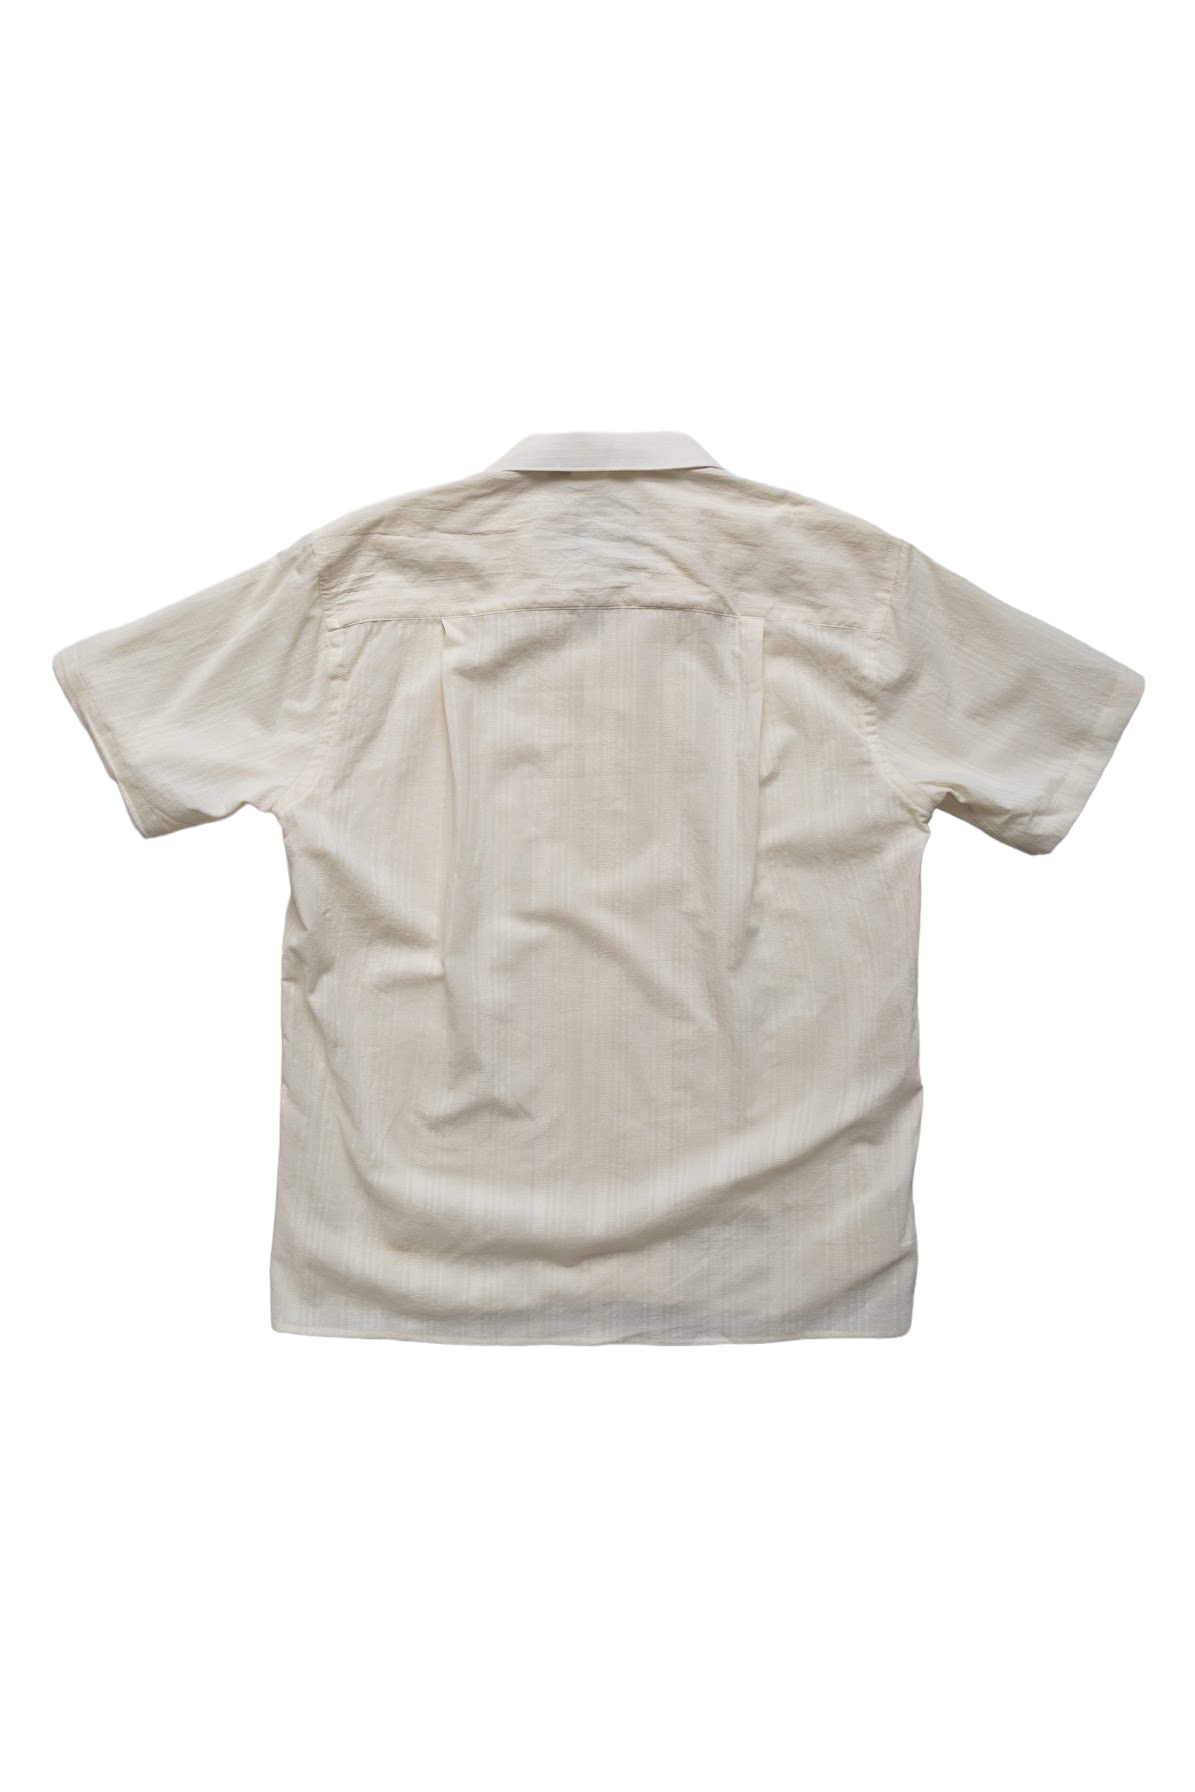 S/S Beach Shirt - White